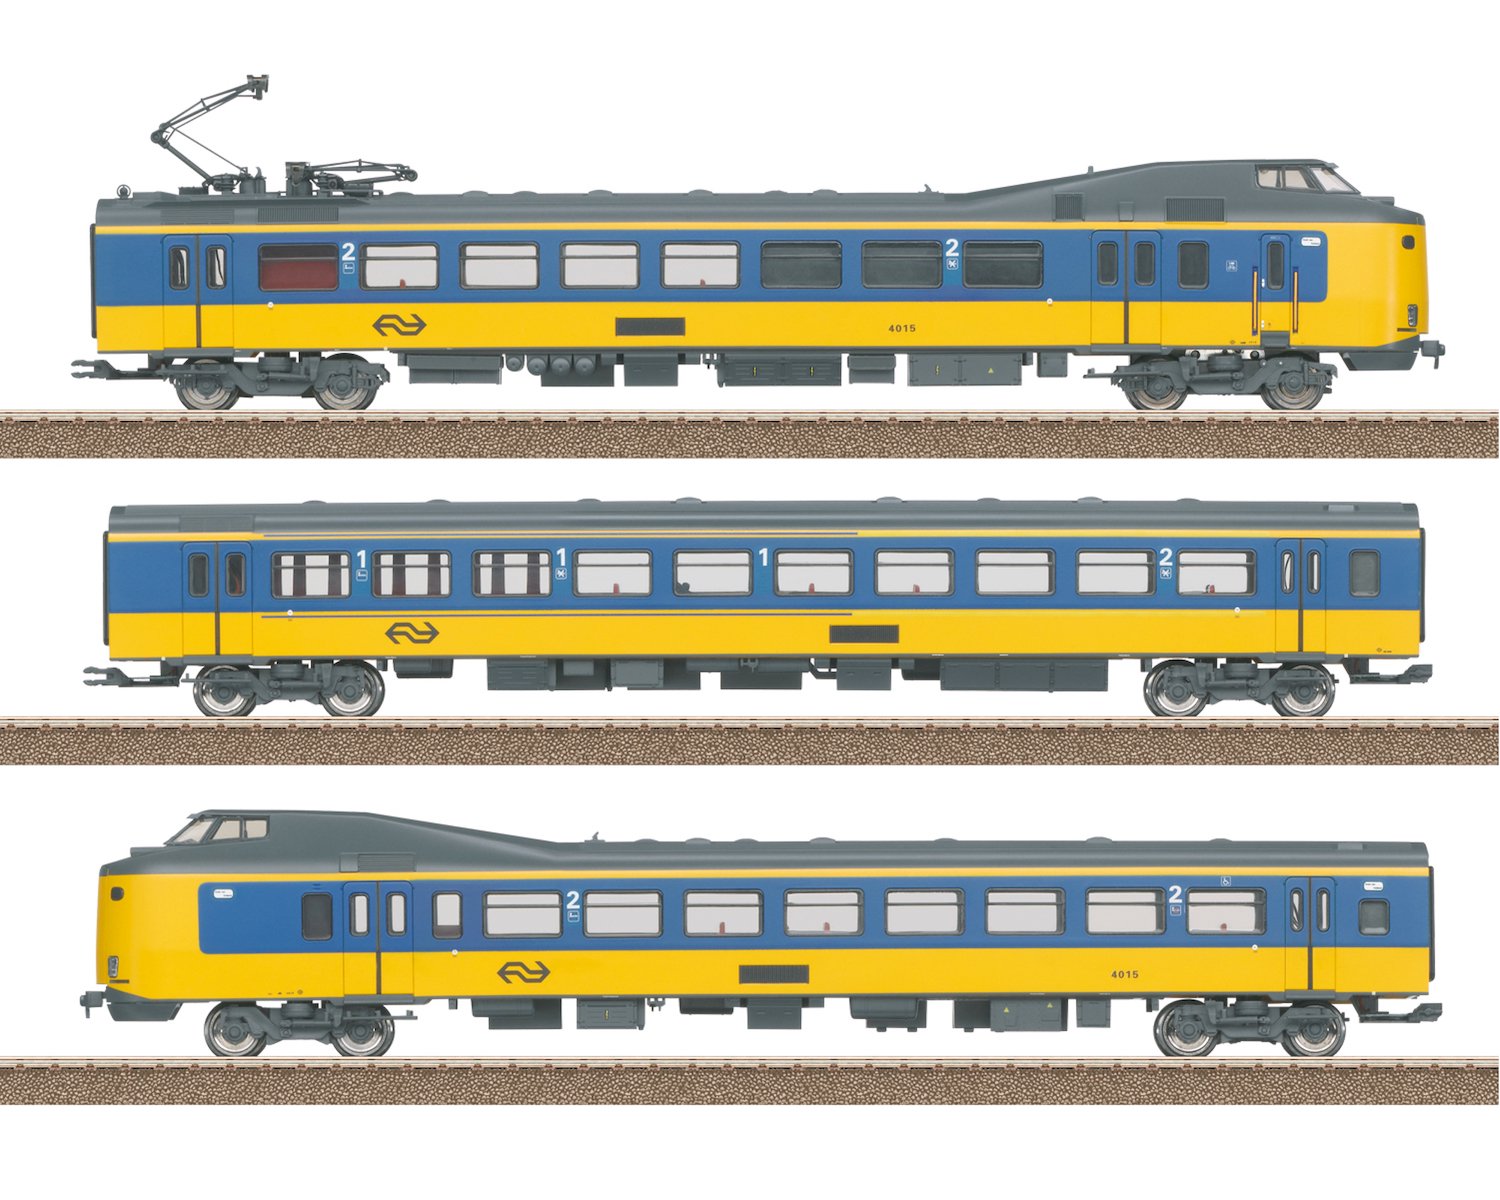 トリックス(Trix) HO Class ICM-1 Koploper Electric Rail Car Train 